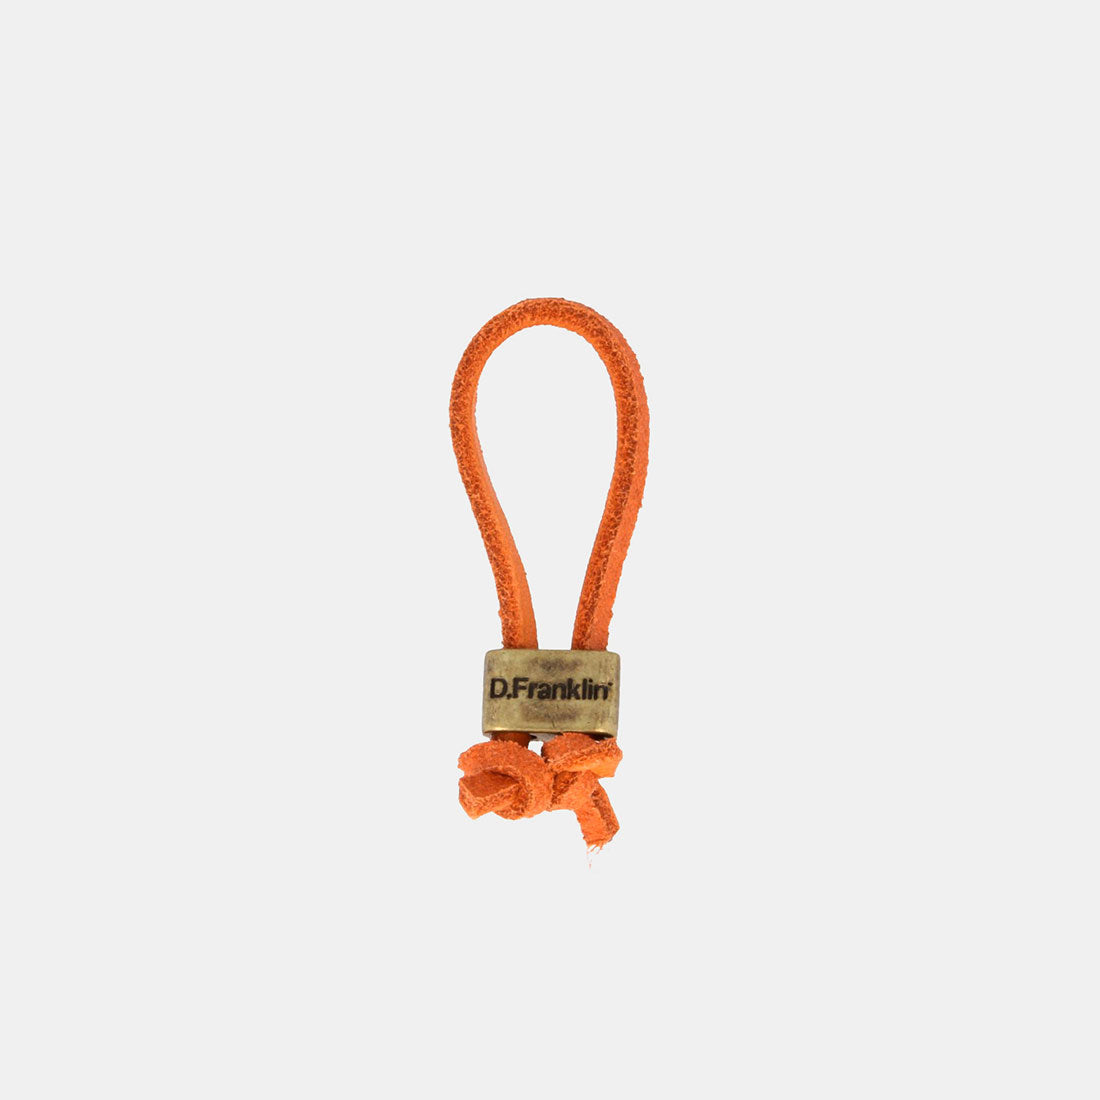 Keychain Magnum Leather Orange/Gold